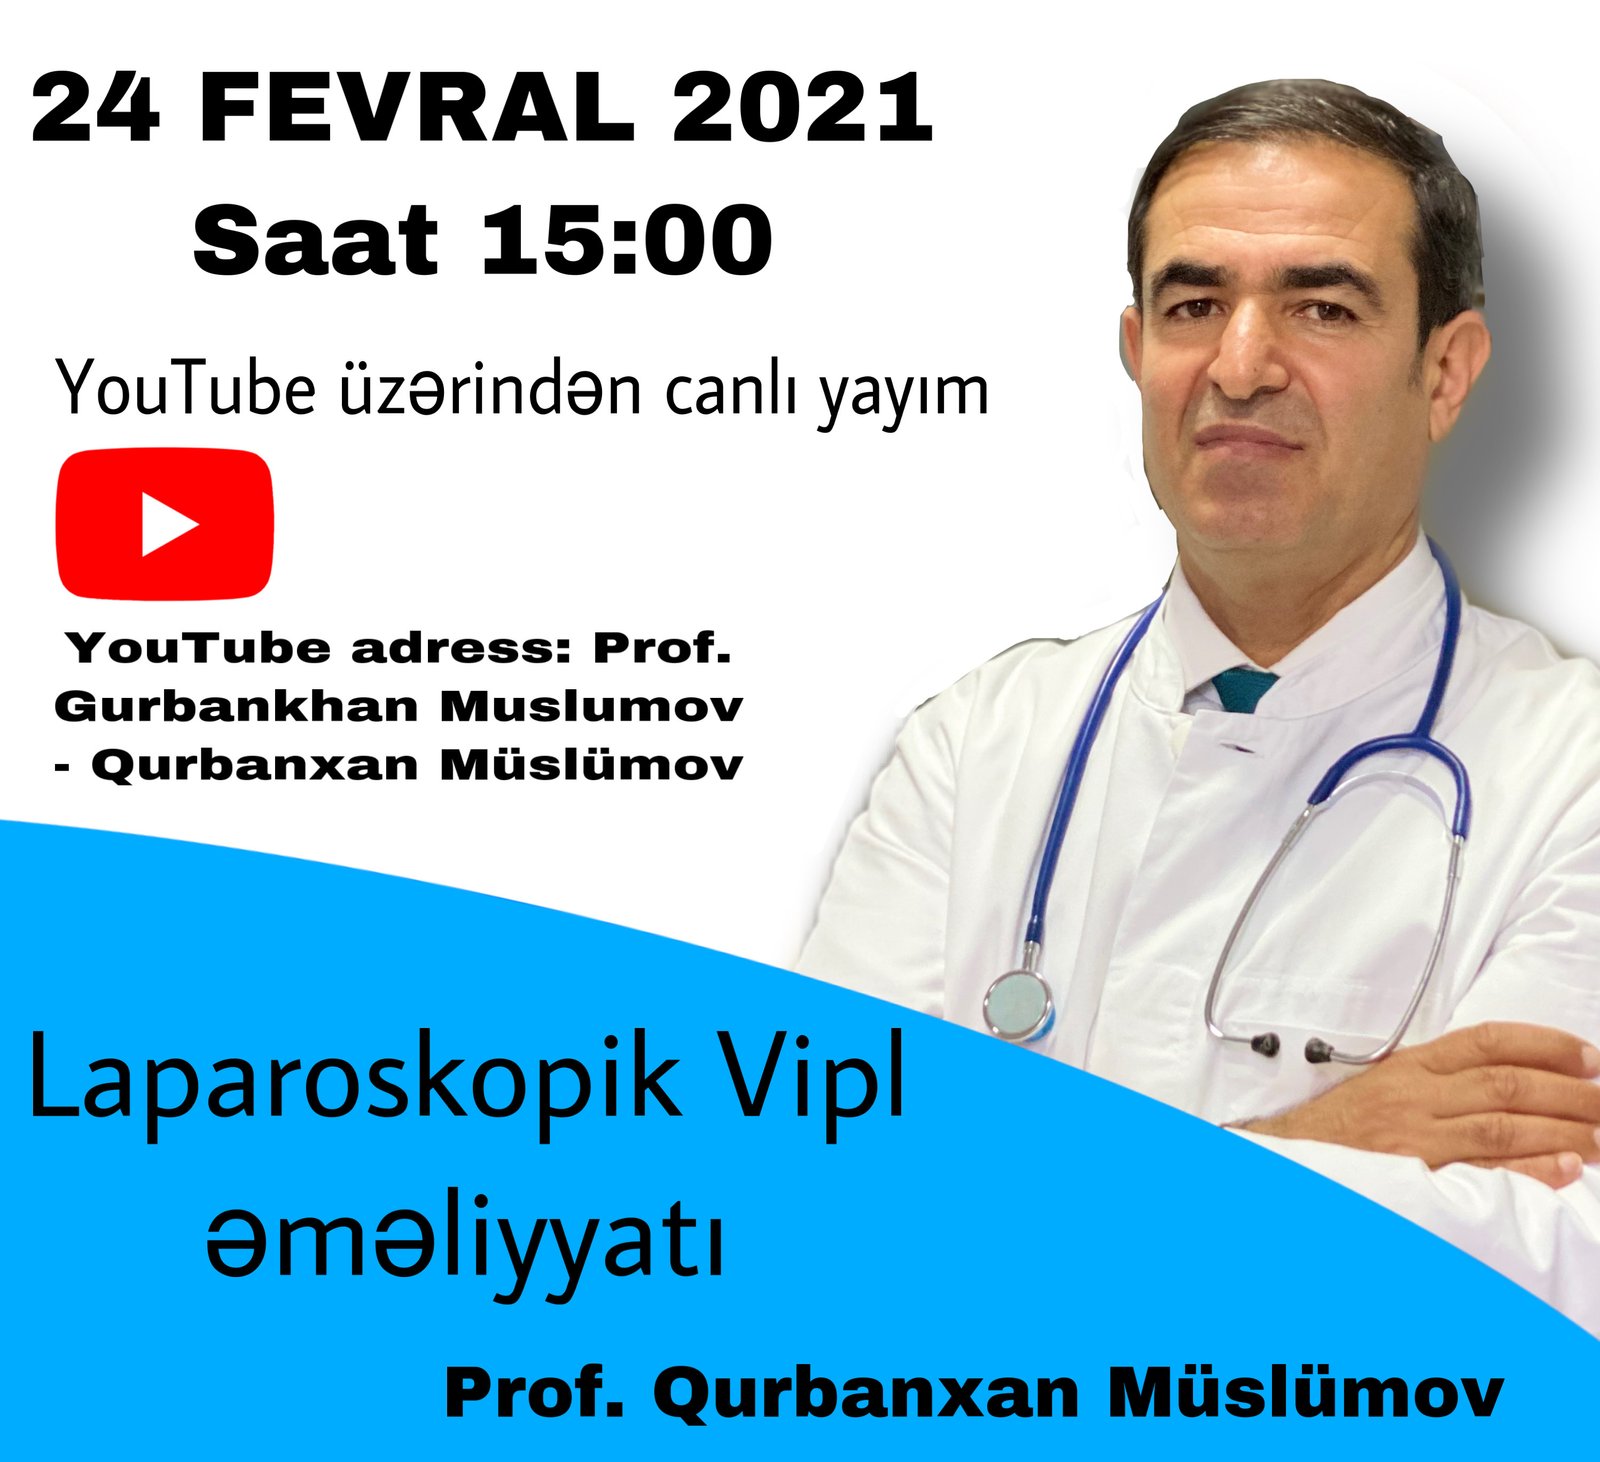 Bu gün (24 fevral) Prof. Qurbanxan Müslümov canlı yayımda Vipl əməliyyatı icra edəcək!